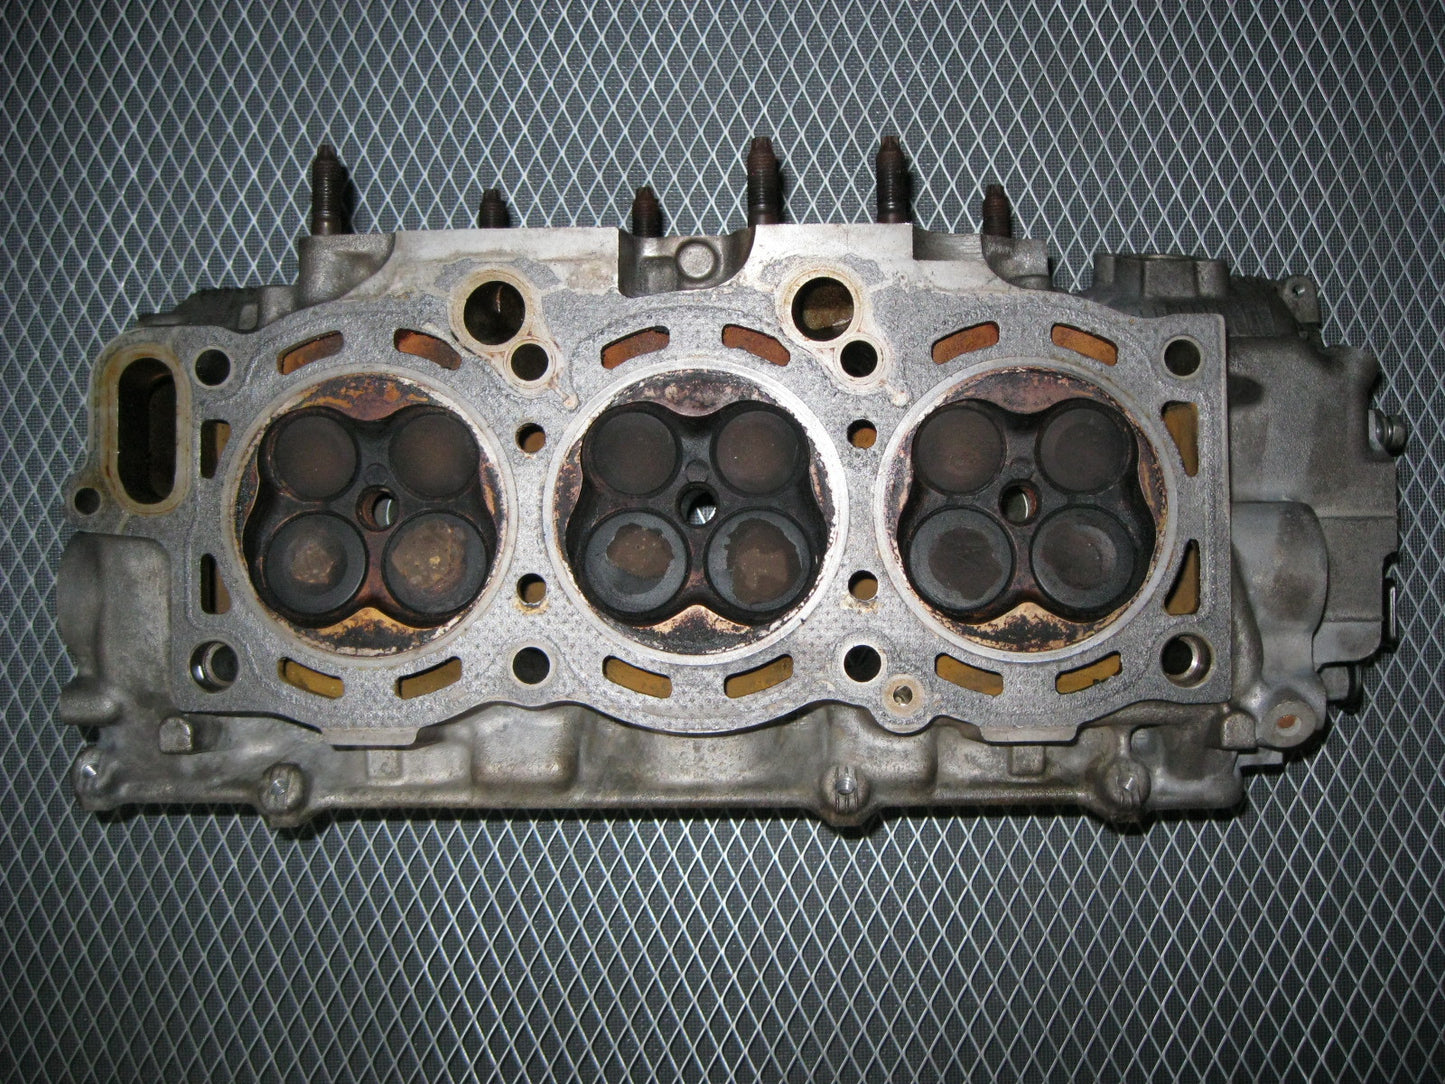 JDM Toyota 1MZ-FE 3.0L V6 None VVTi Engine Cylinder Head - Left